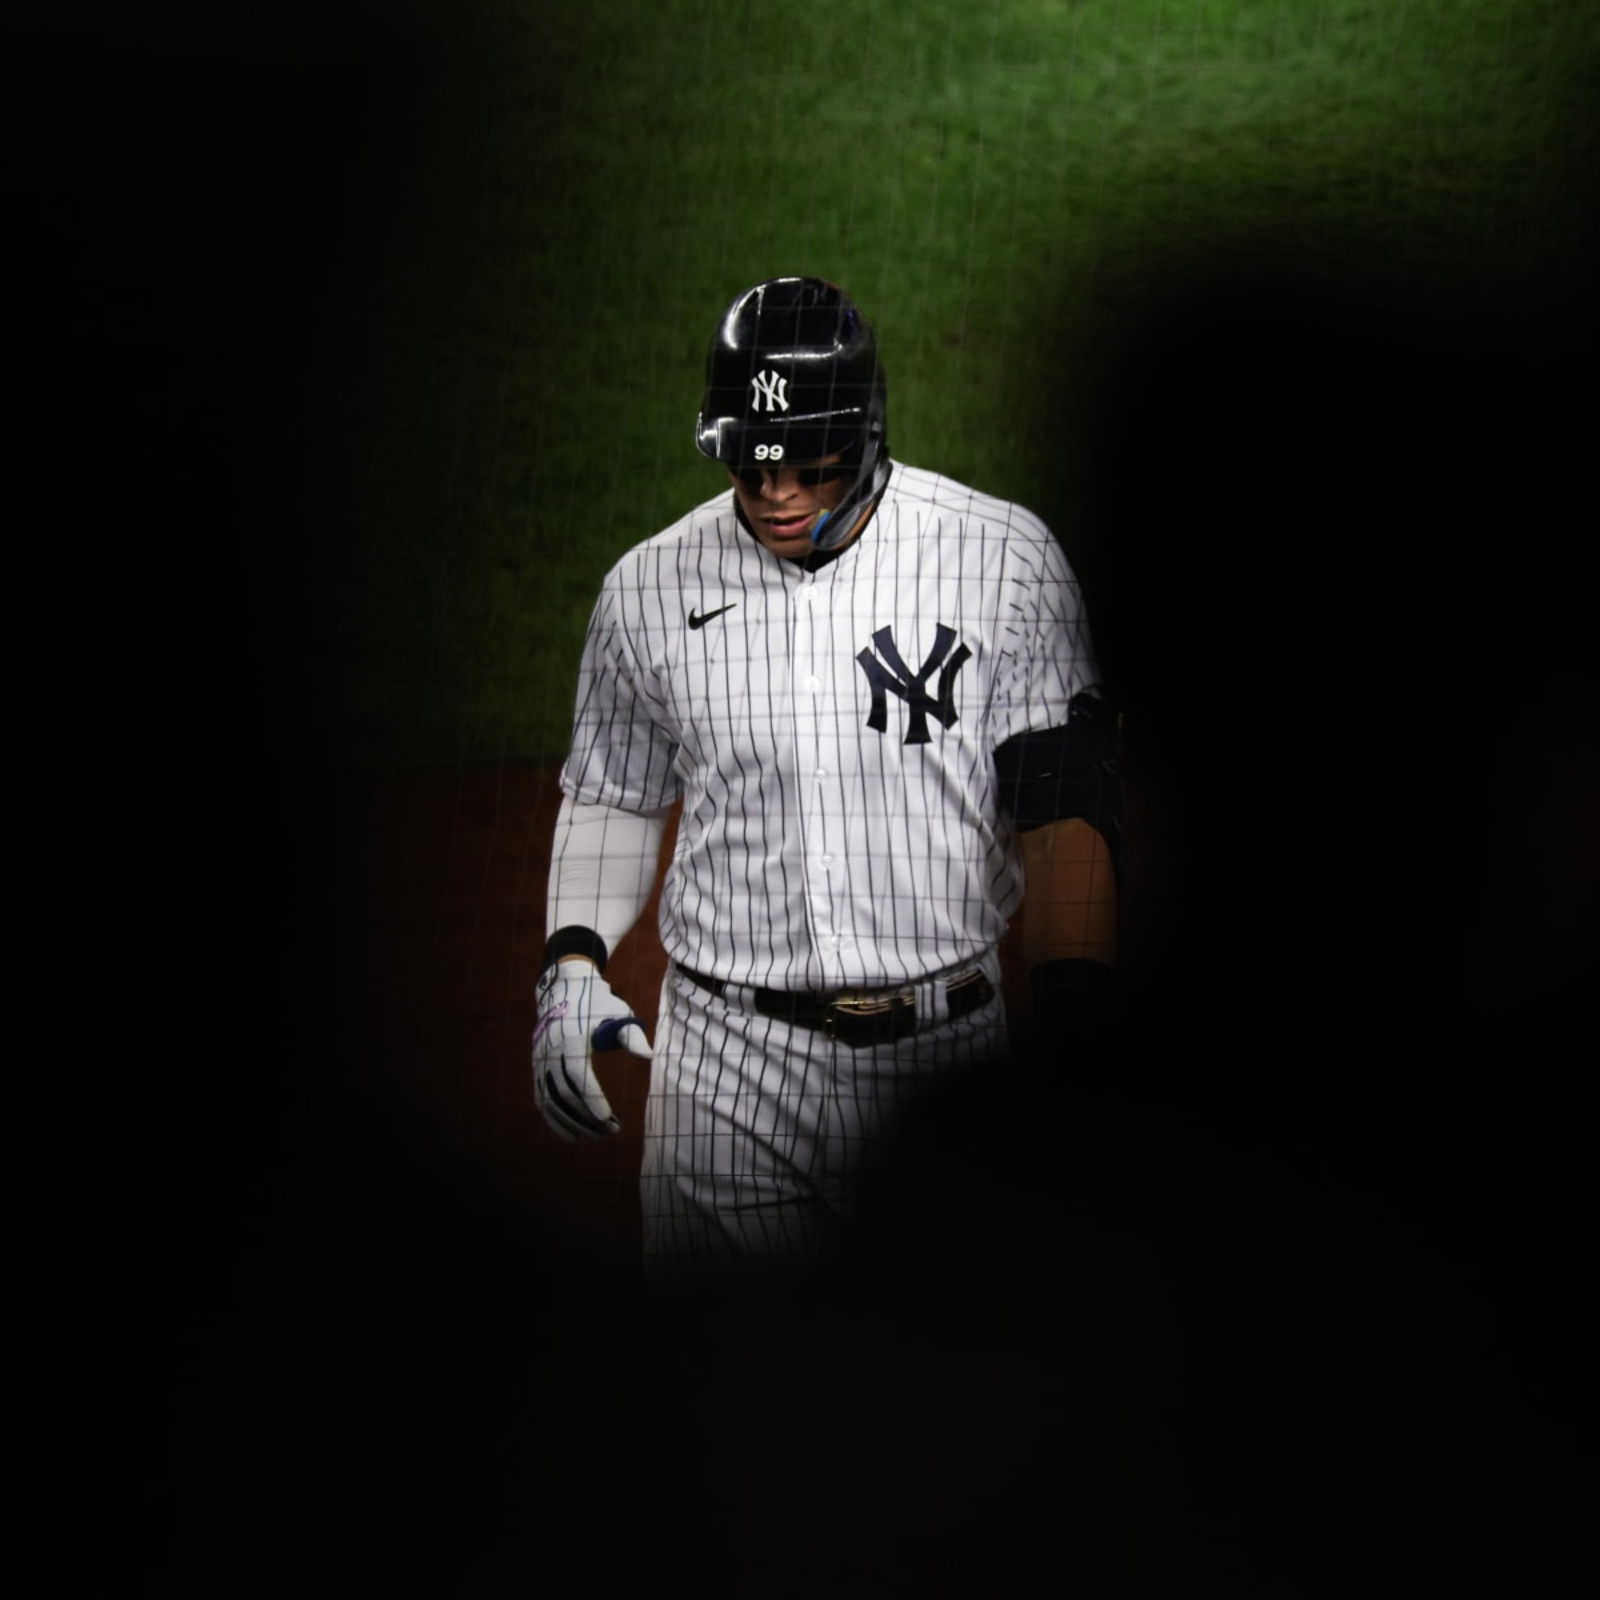 The New York Yankees are Nolan Arenado favorites, but should resist